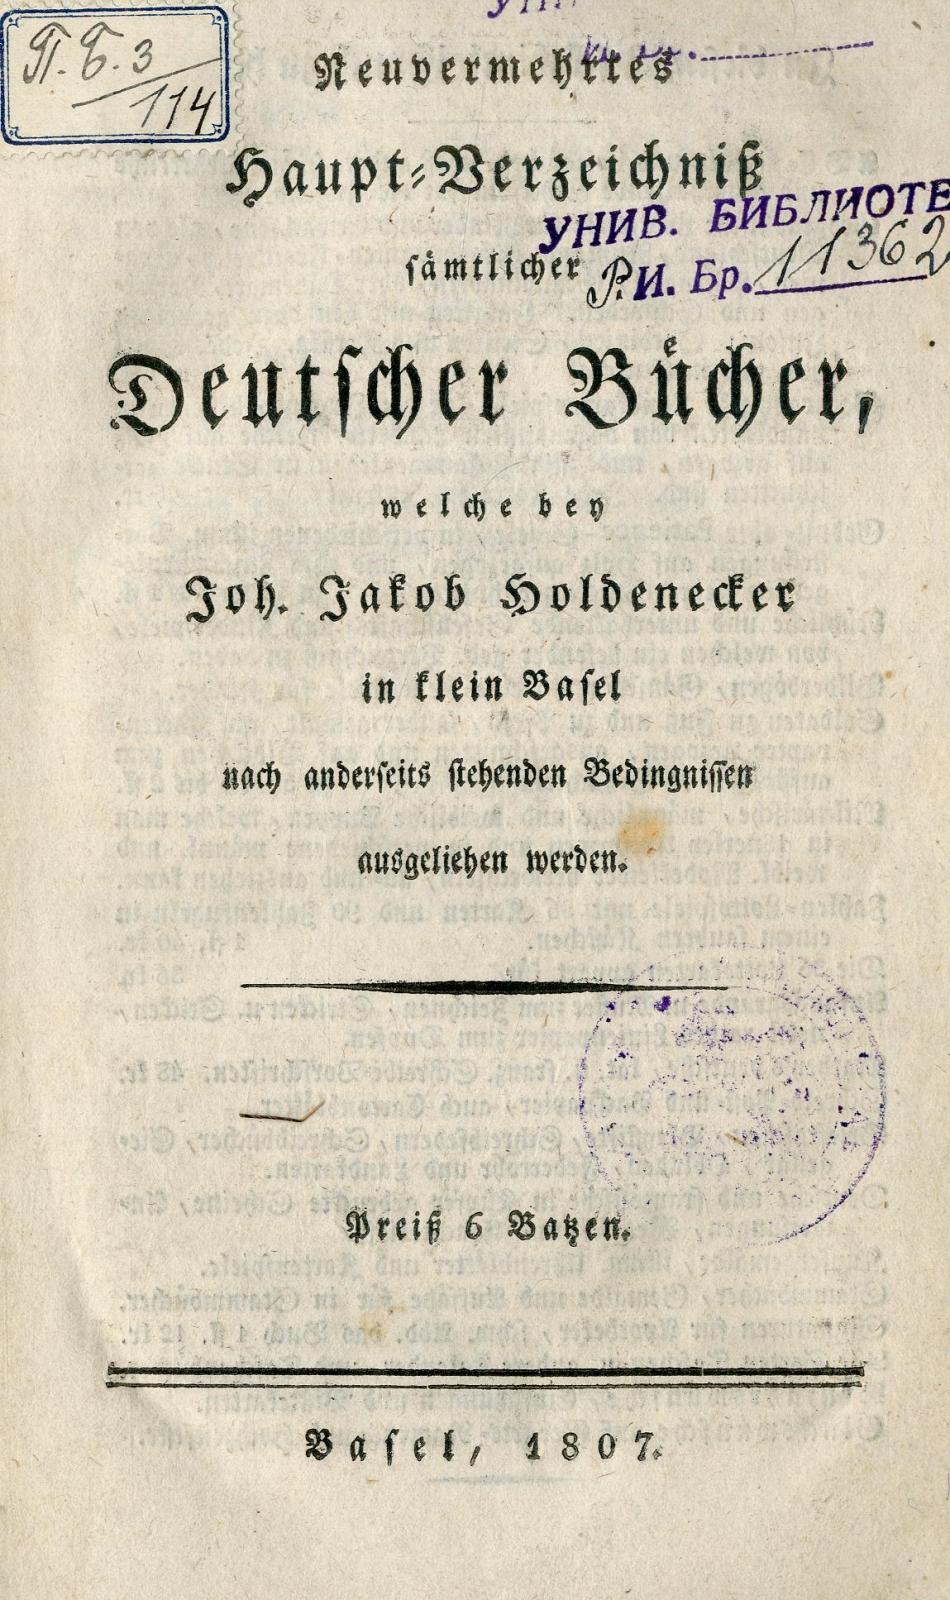 Neuvermehrtes Haupt-Verzeichniss sämtlicher Deutscher Bücher, welche bei Joh. Jakob Holdenecker in klein Basel nach anderseits stehenden Bedingnissen ausgeliechen werden